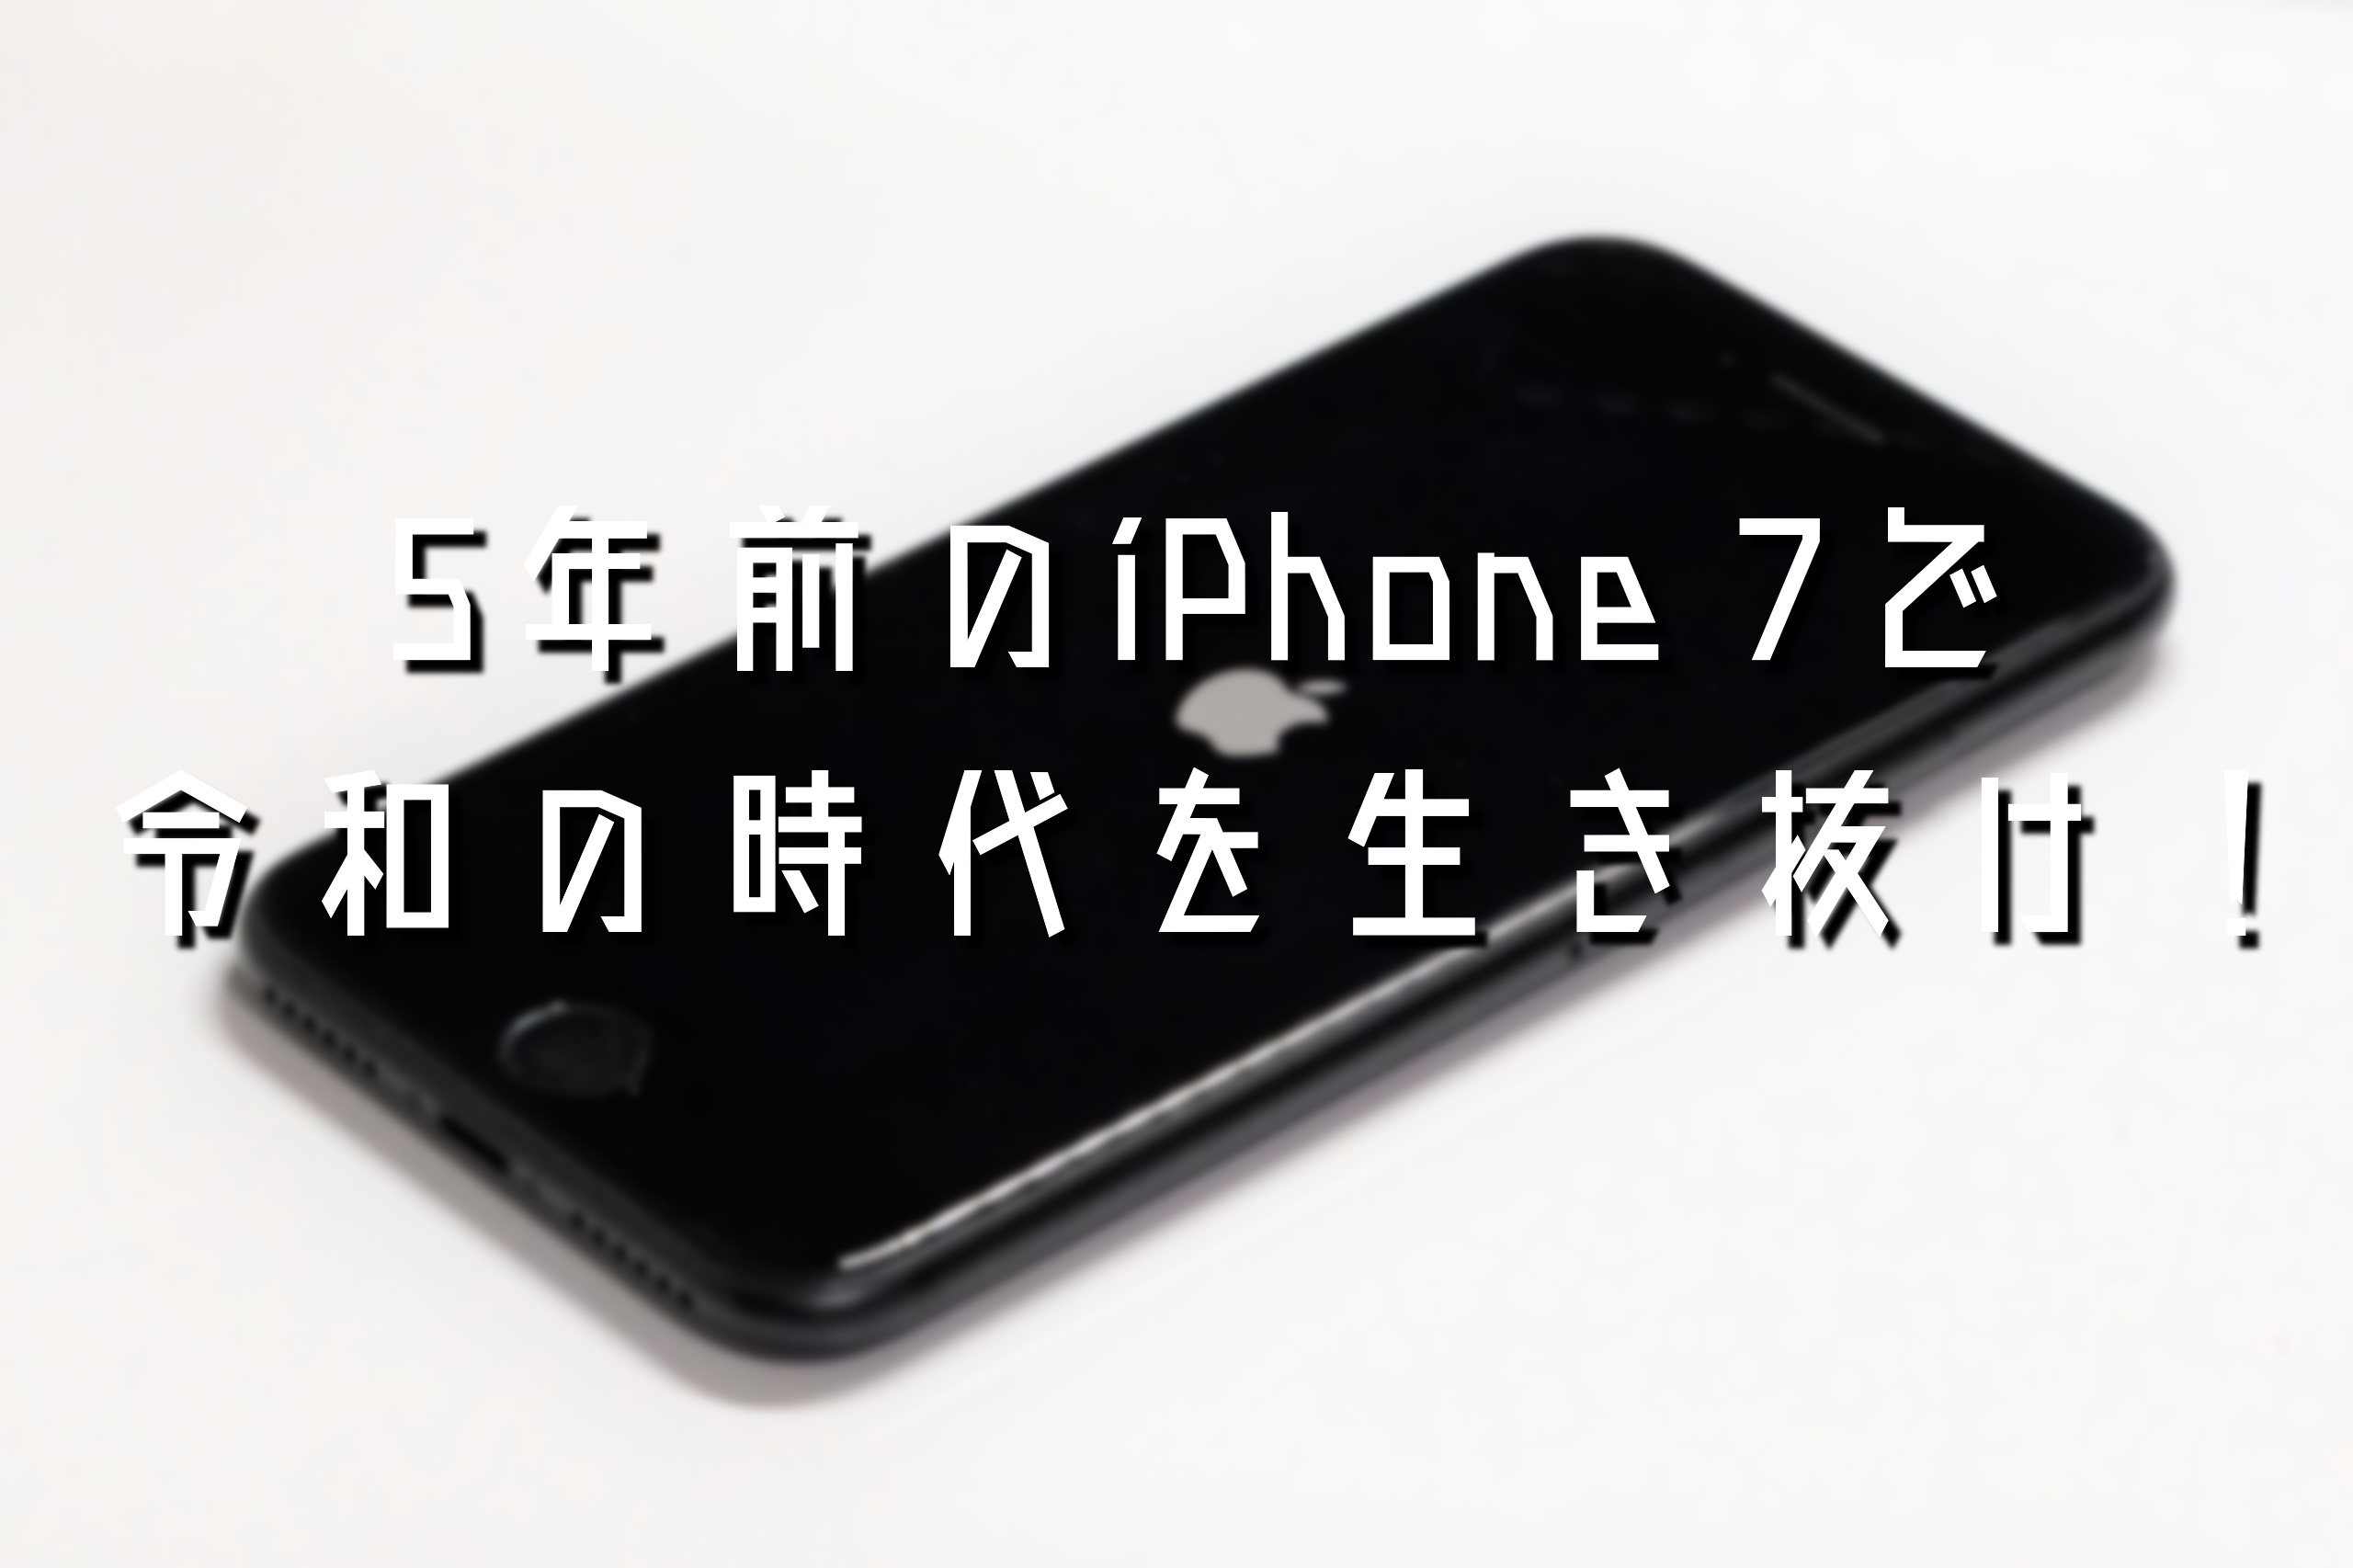 1万円以下の中古iPhone 7をメイン端末として使う